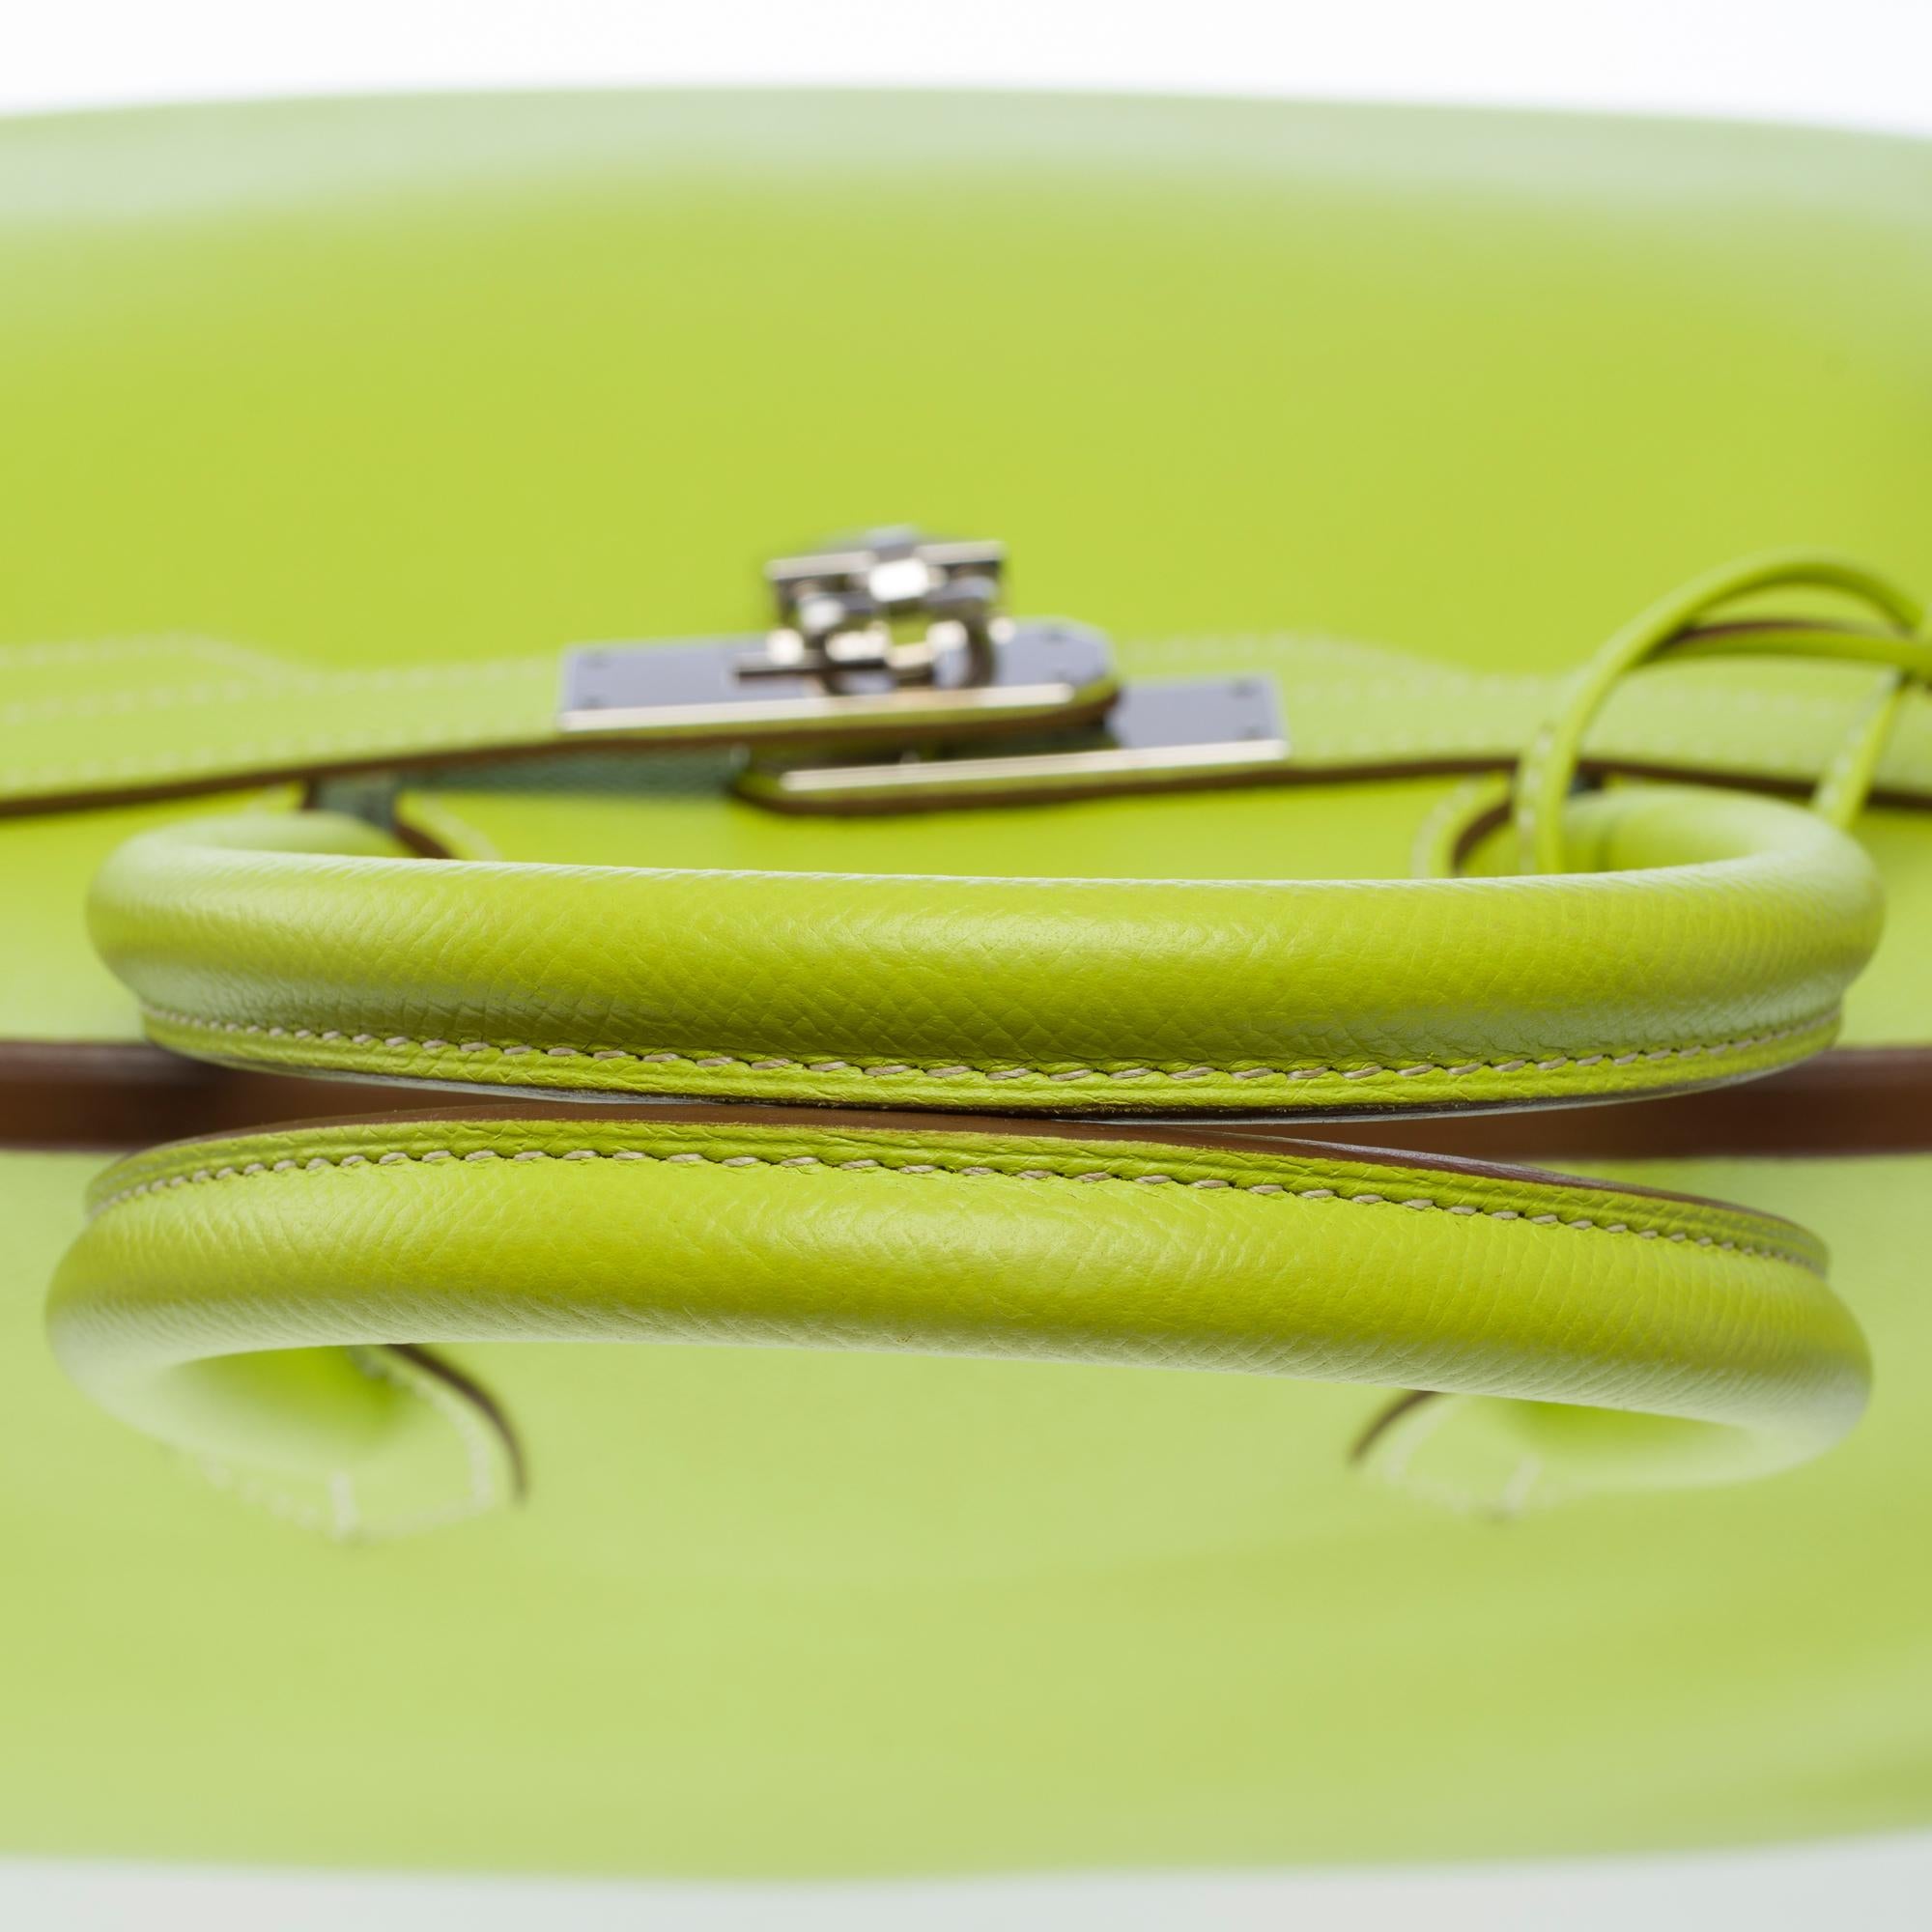 Candy limited edition Hermès Birkin 35 handbag in Kiwi Green epsom leather, SHW 5